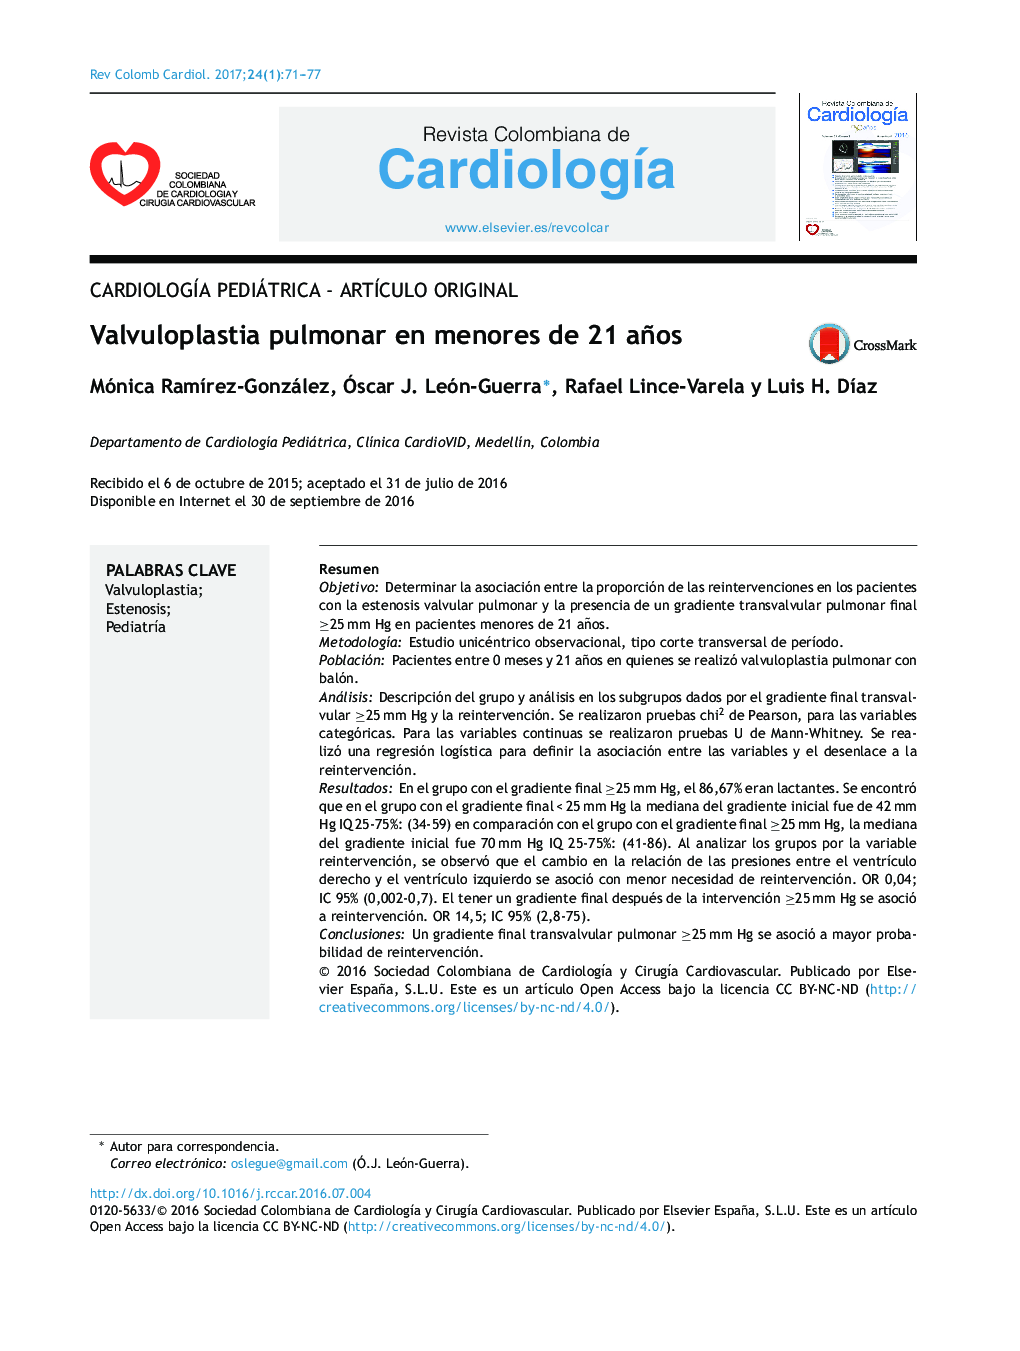 CardiologÃ­a pediátrica - ArtÃ­culo originalValvuloplastia pulmonar en menores de 21 añosPulmonary valvuloplasty in patients under the age of 21